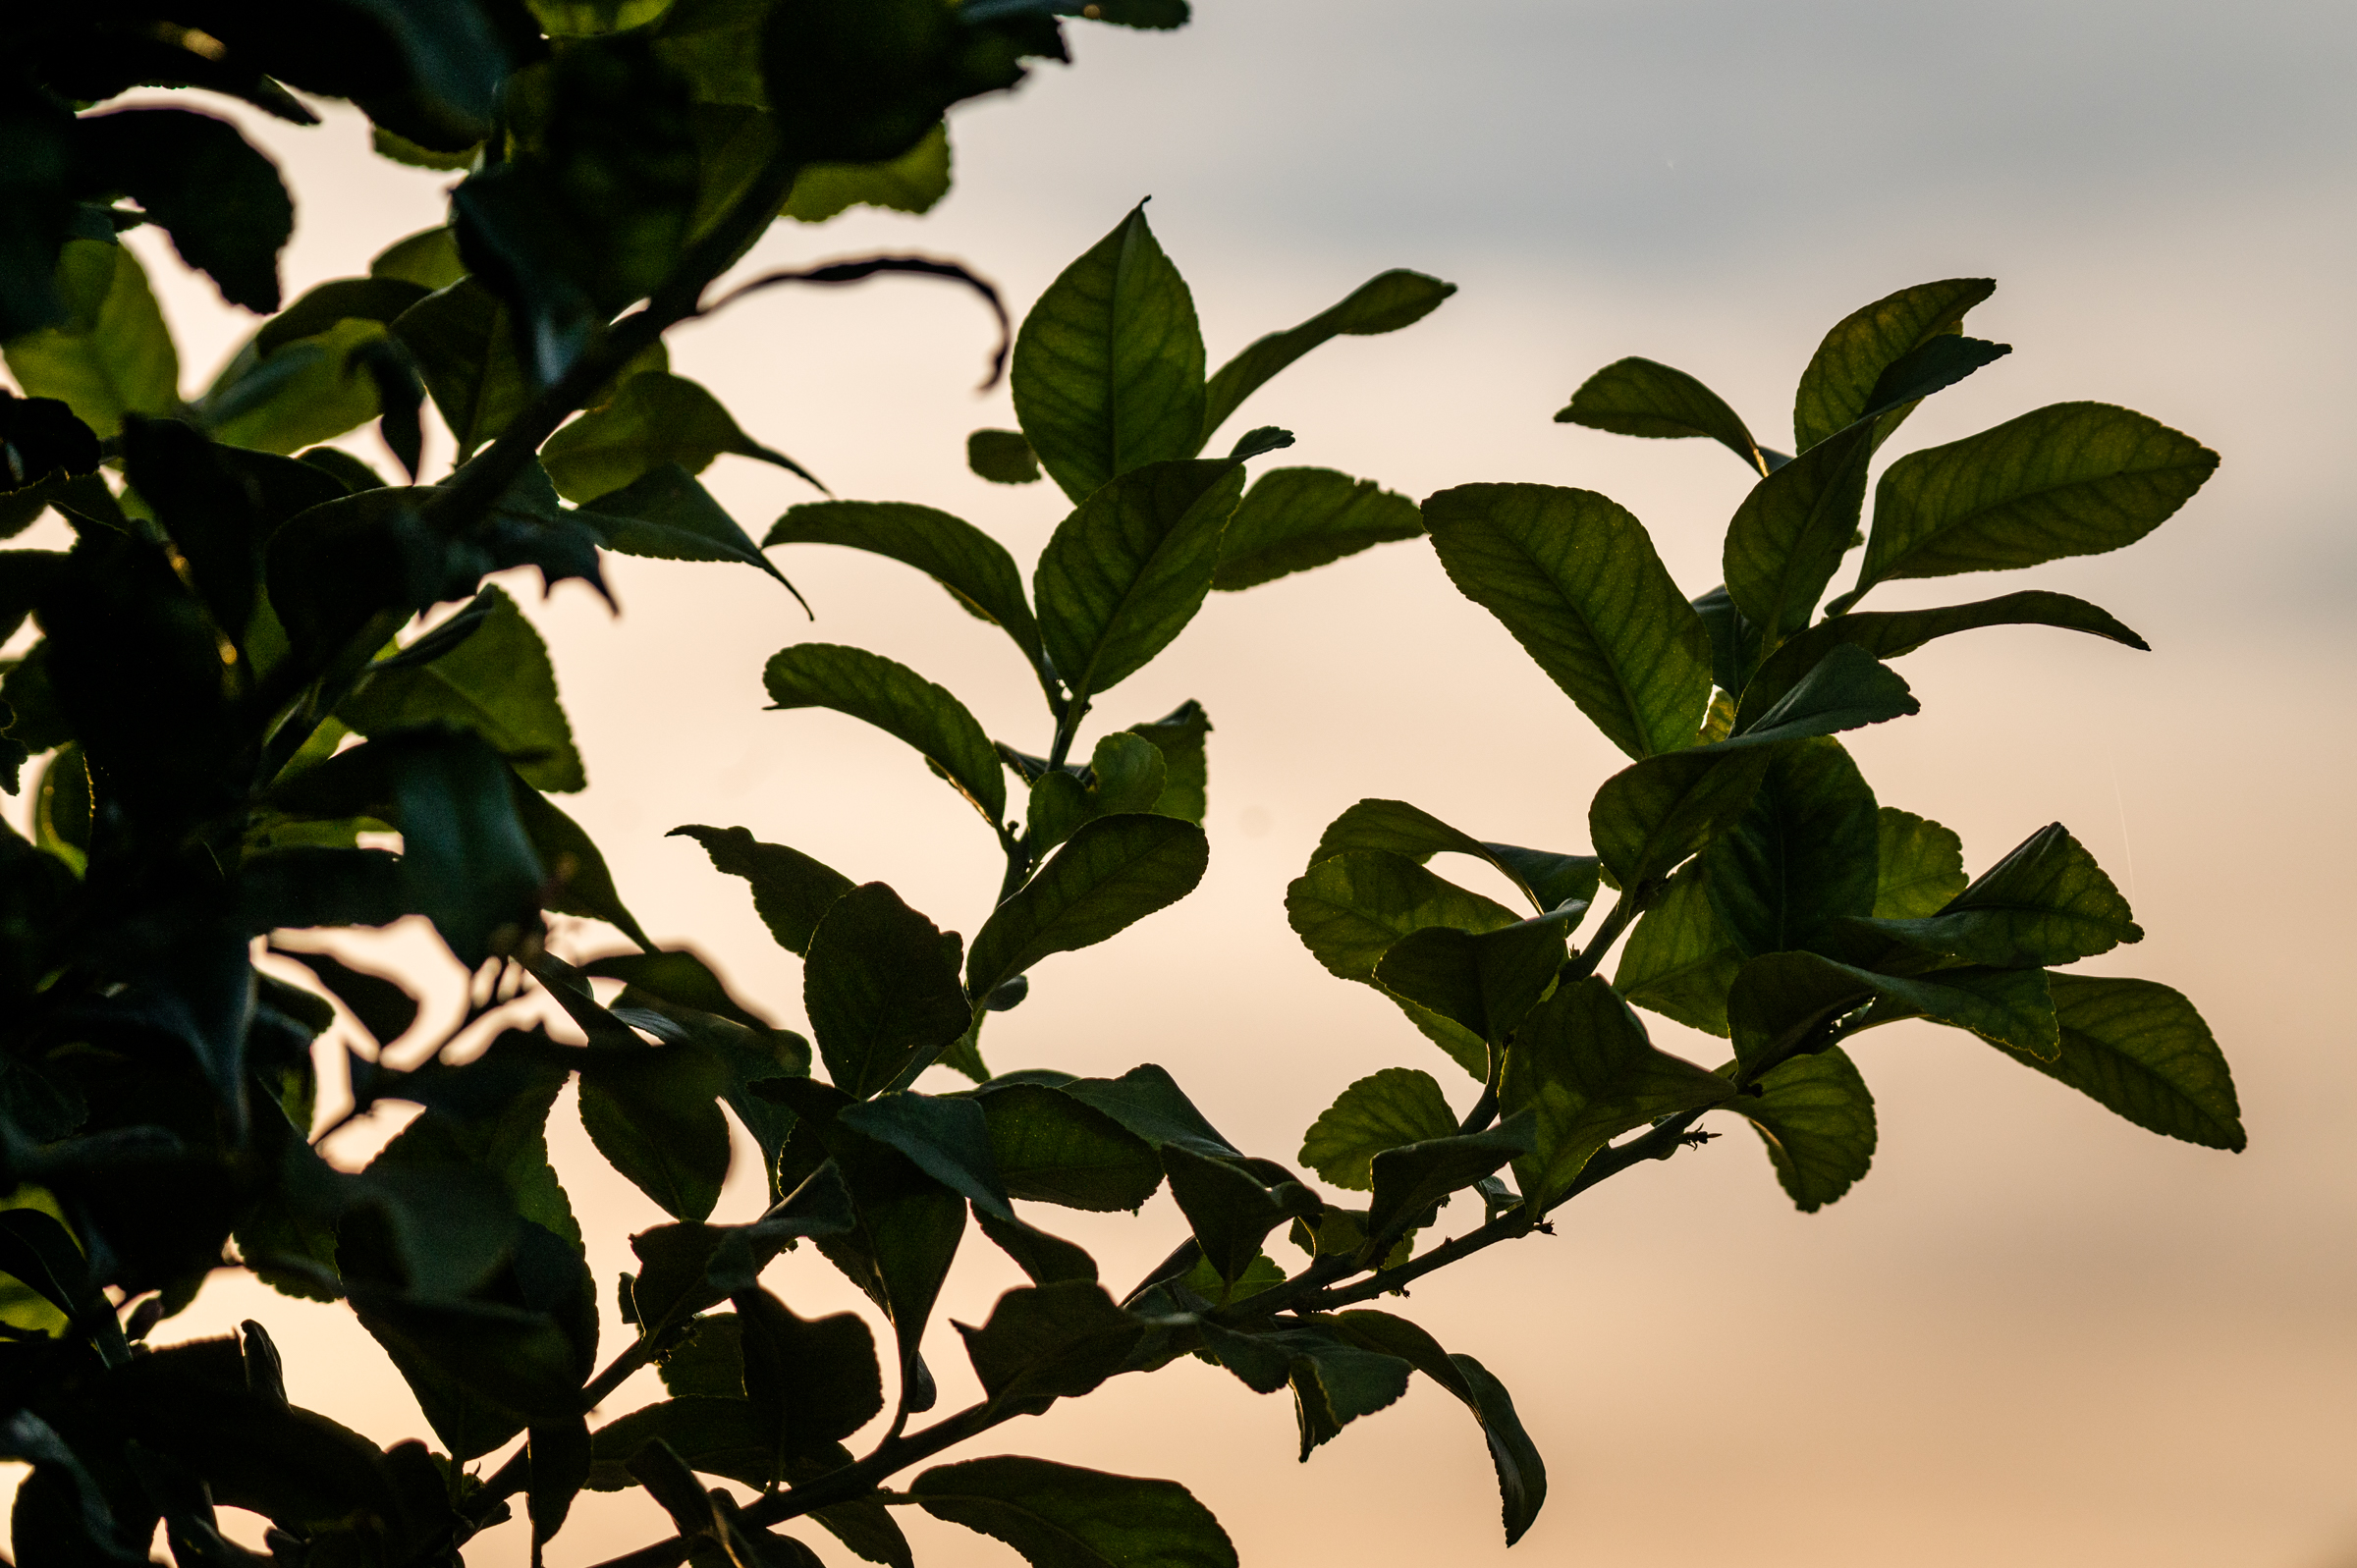 Lemon tree foliage at sunset